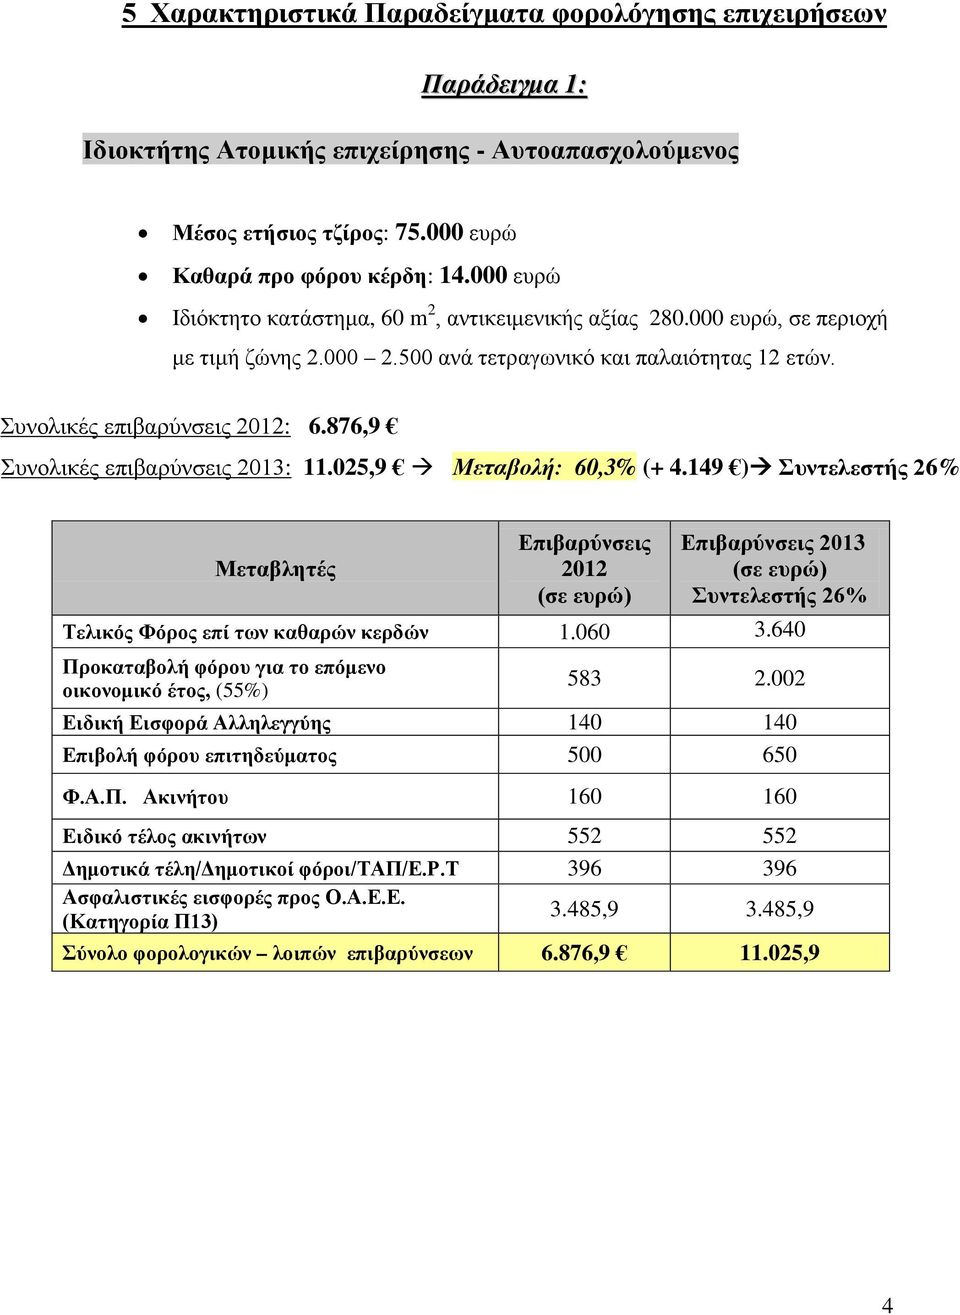 876,9 Συνολικές επιβαρύνσεις 2013: 11.025,9 Μεταβολή: 60,3% (+ 4.149 ) Συντελεστής 26% Μεταβλητές Επιβαρύνσεις 2012 Επιβαρύνσεις 2013 Συντελεστής 26% Τελικός Φόρος επί των καθαρών κερδών 1.060 3.